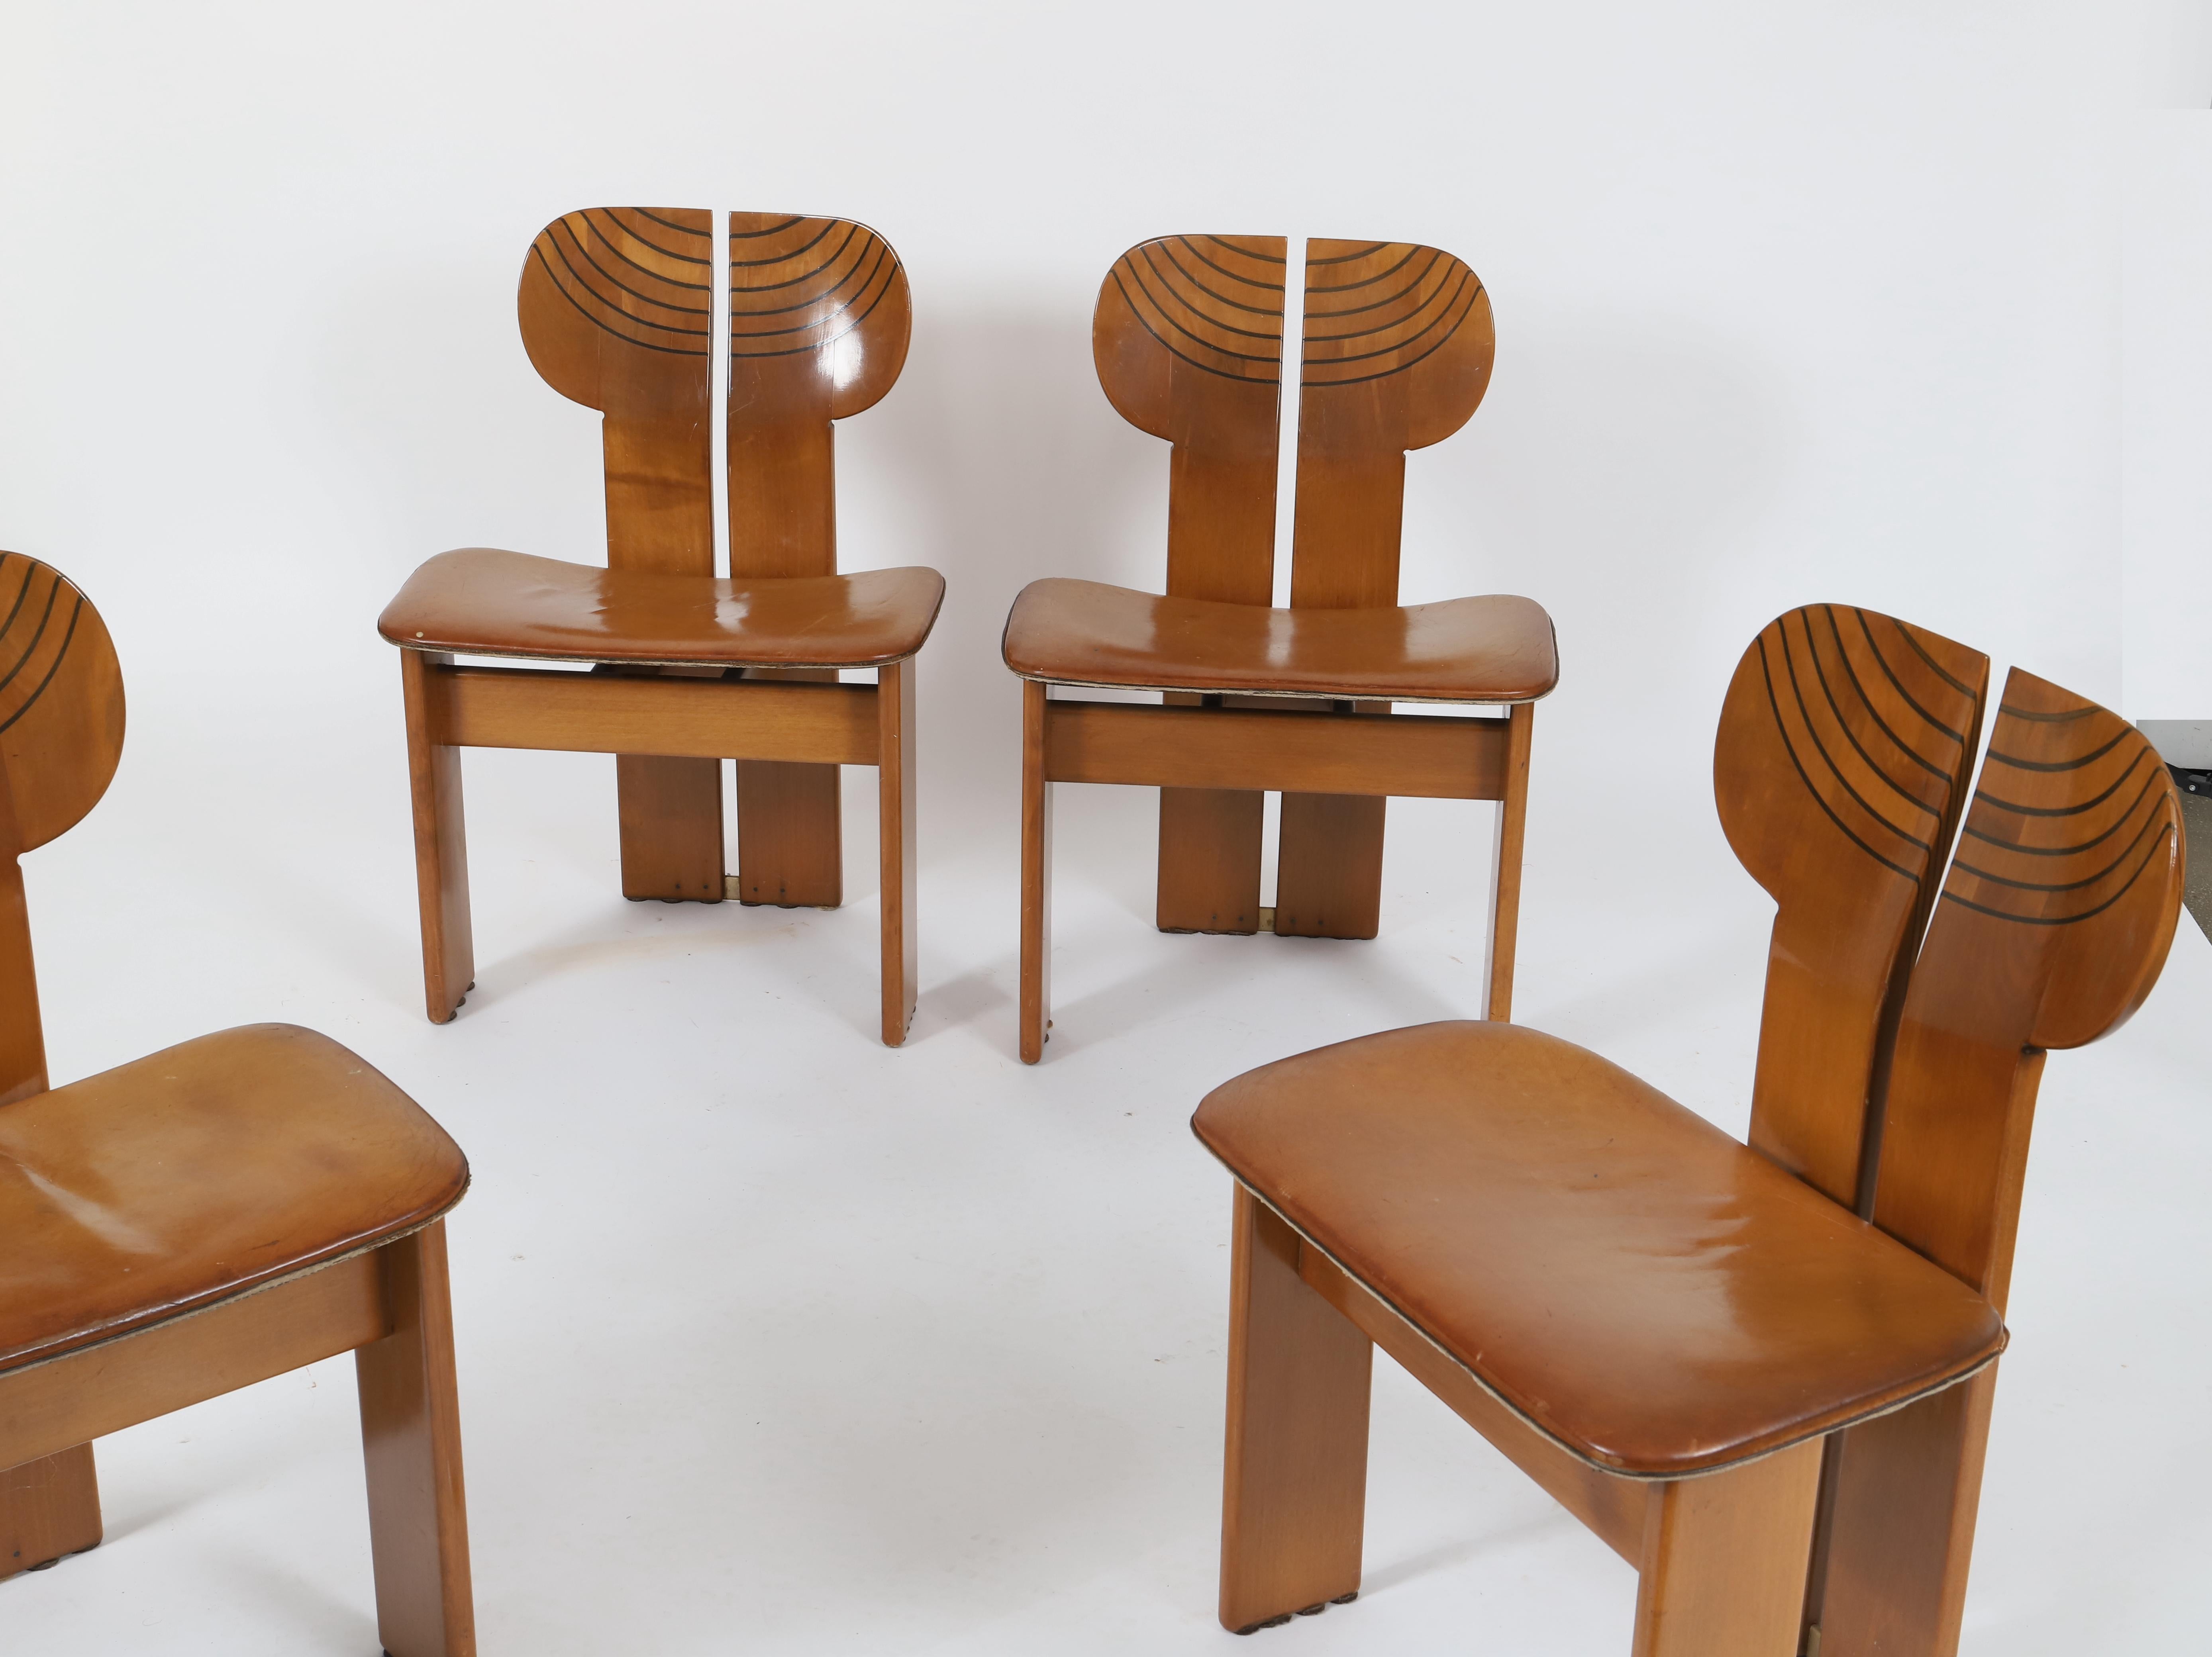 Afra (1937-2011) & Tobia Scarpa (geboren 1935)
Afrika
Serie Artona
Esstisch und vier Stühle
Nussbaum, Ebenholz, Leder und Messing
Herausgegeben von Maxalto
Modell aus dem Jahr 1975